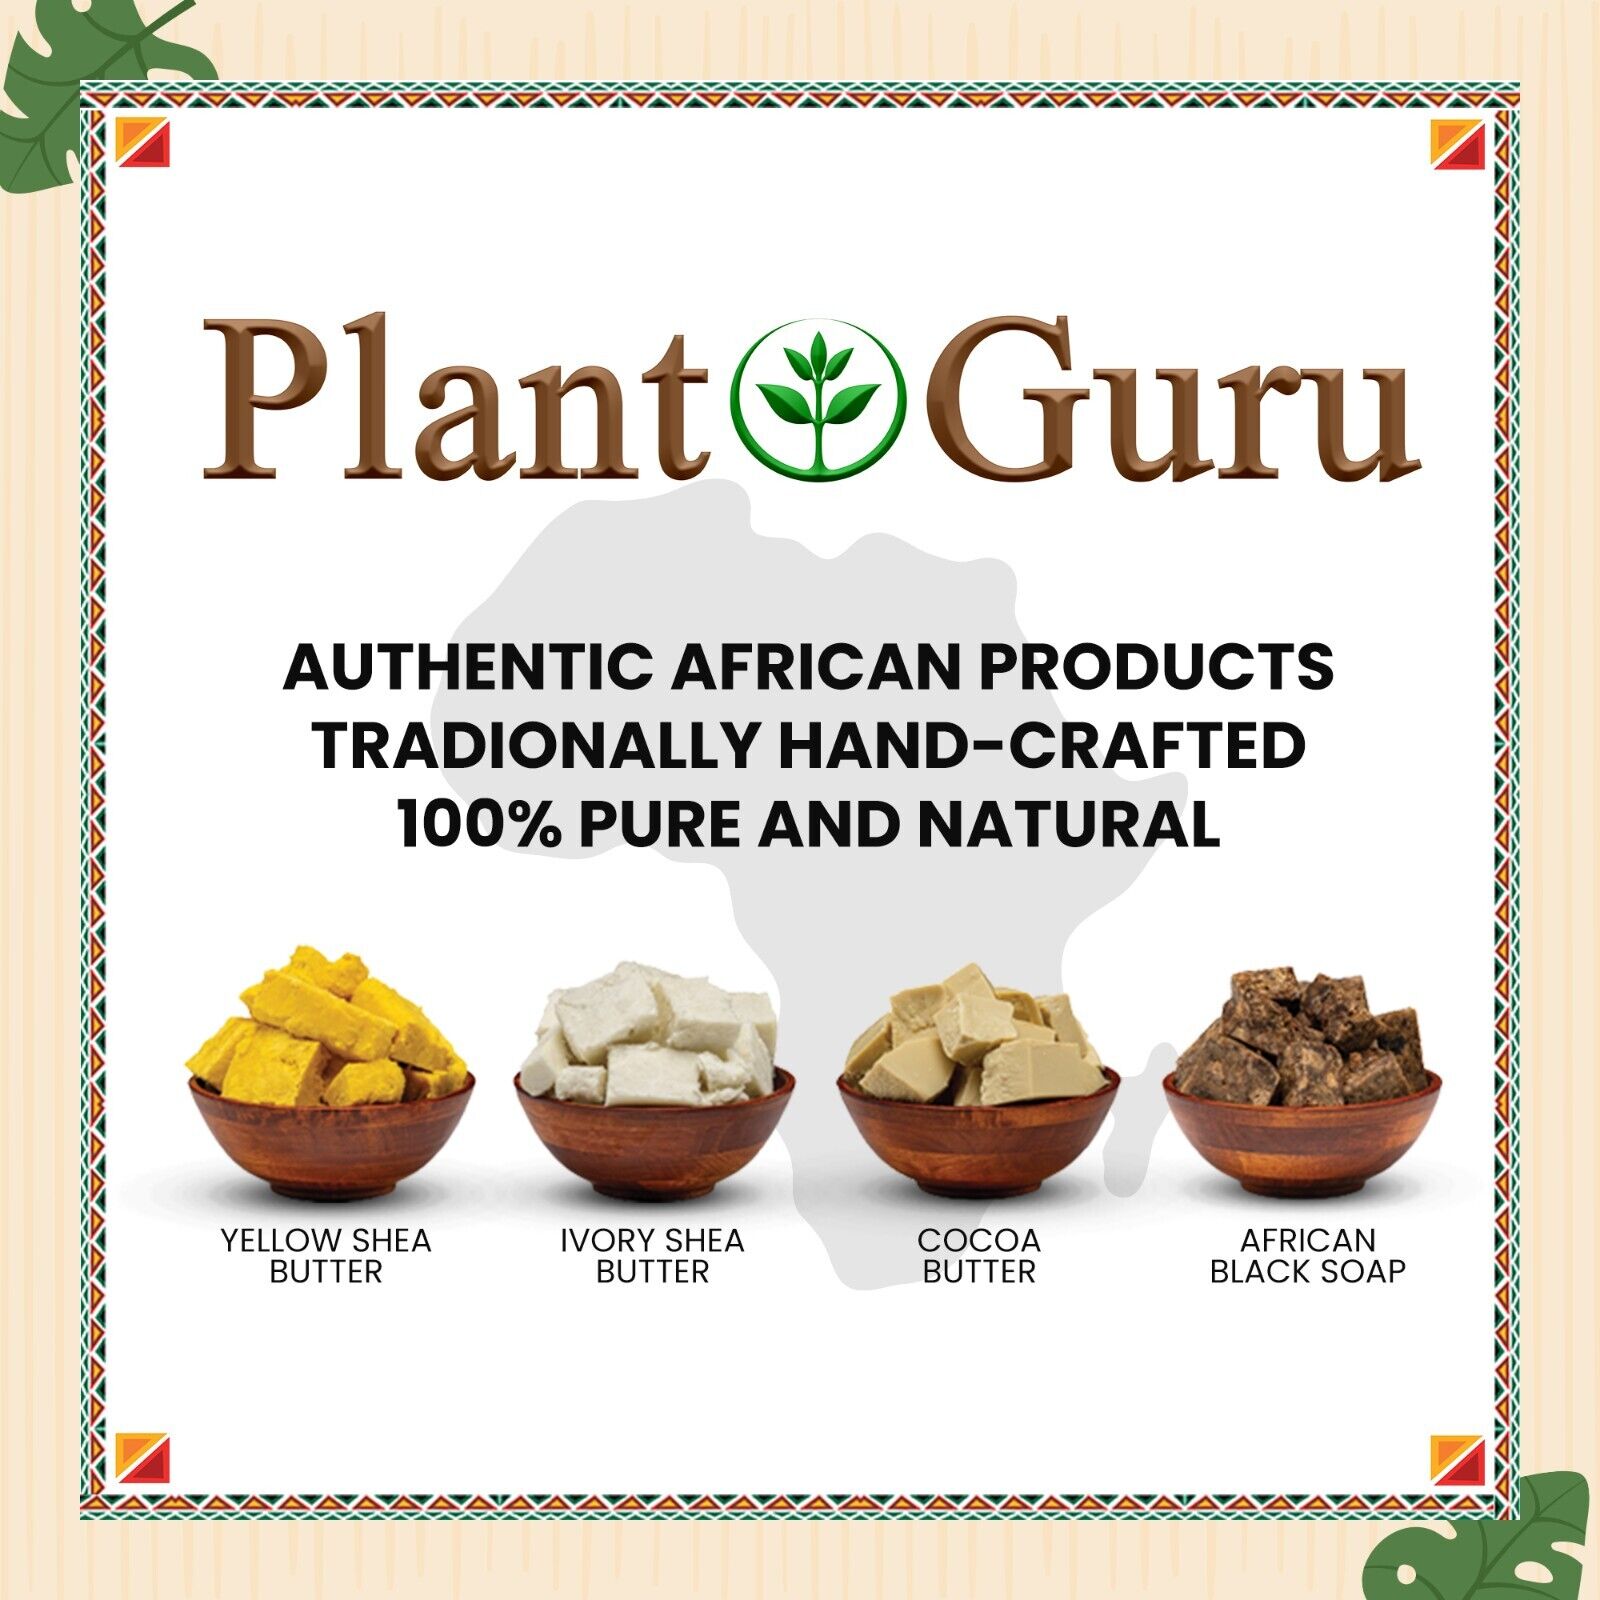 Raw African Black Soap Liquid 100% Pure Organic Natural Bath Body Face Wash Bulk Plant Guru - фотография #9